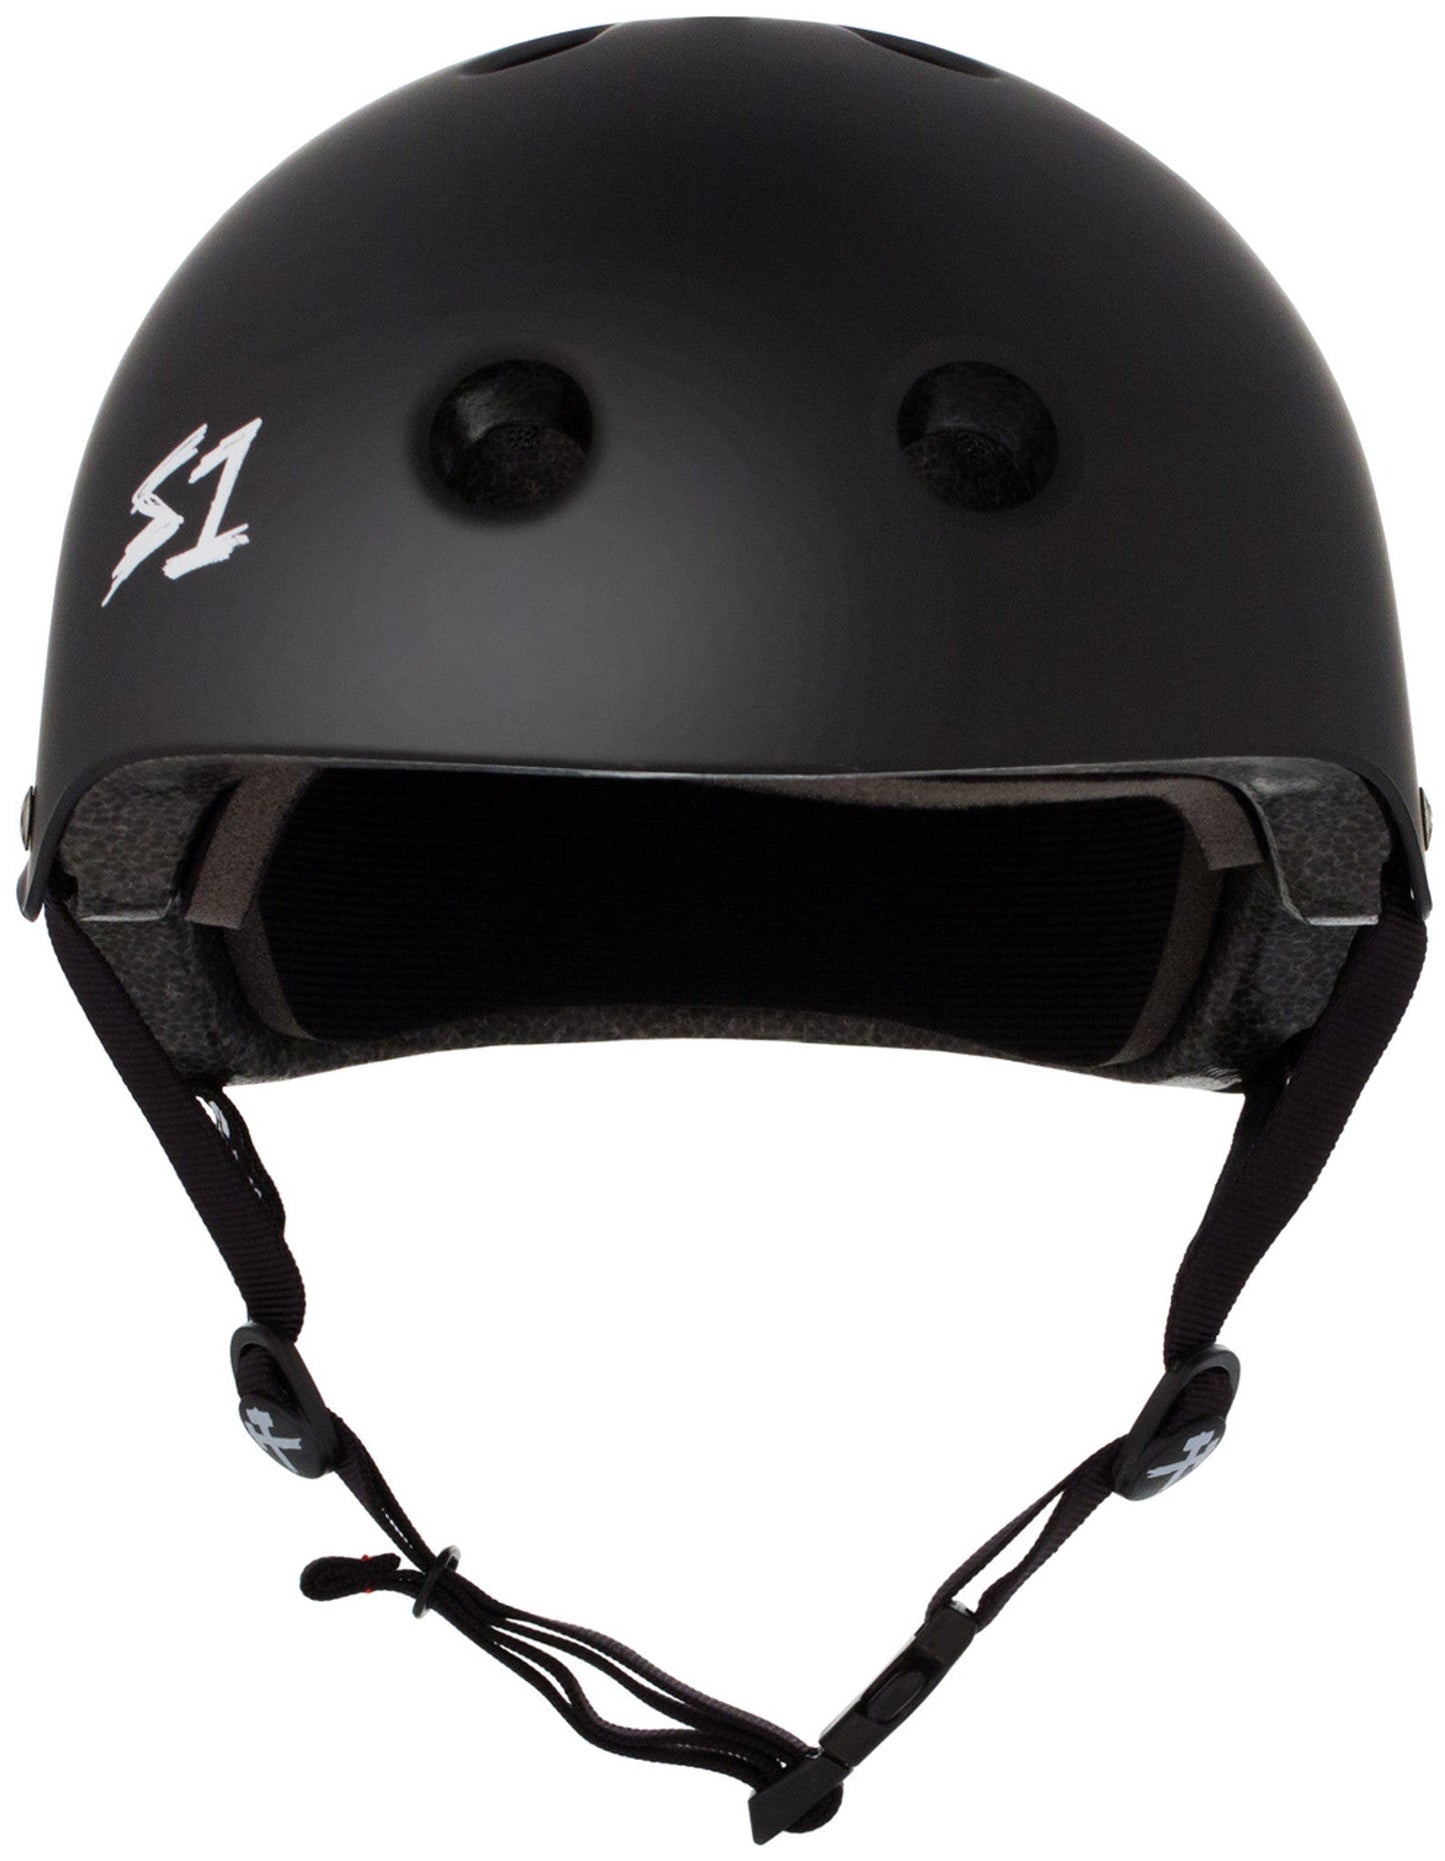 S-One Skateboard Helmet - Soul Performance Surf & Skate - S-One